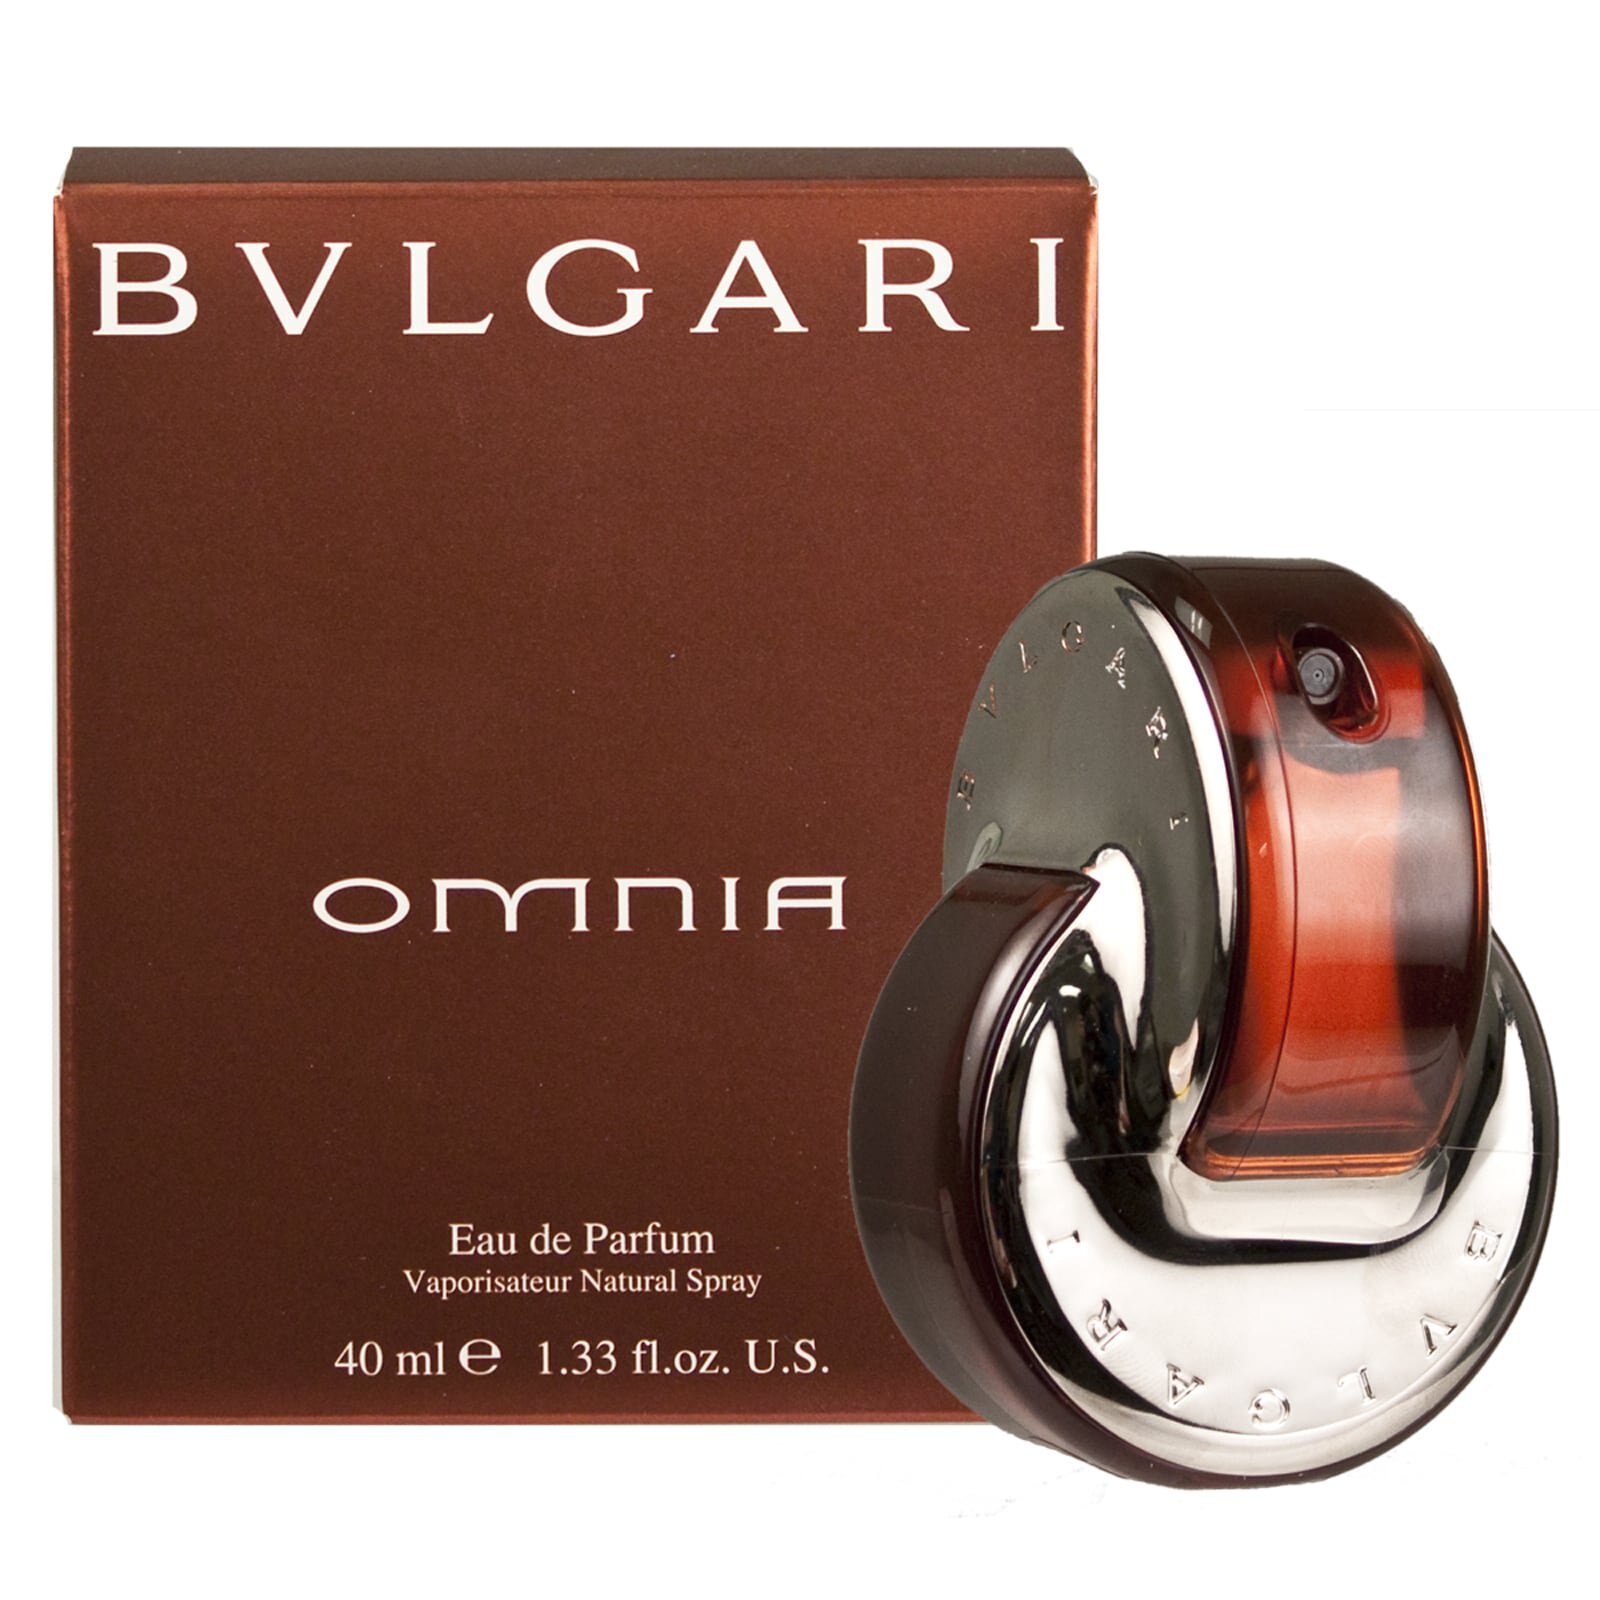 BVLGARI Omnia - Eau de Parfum en spray, 1.33 oz